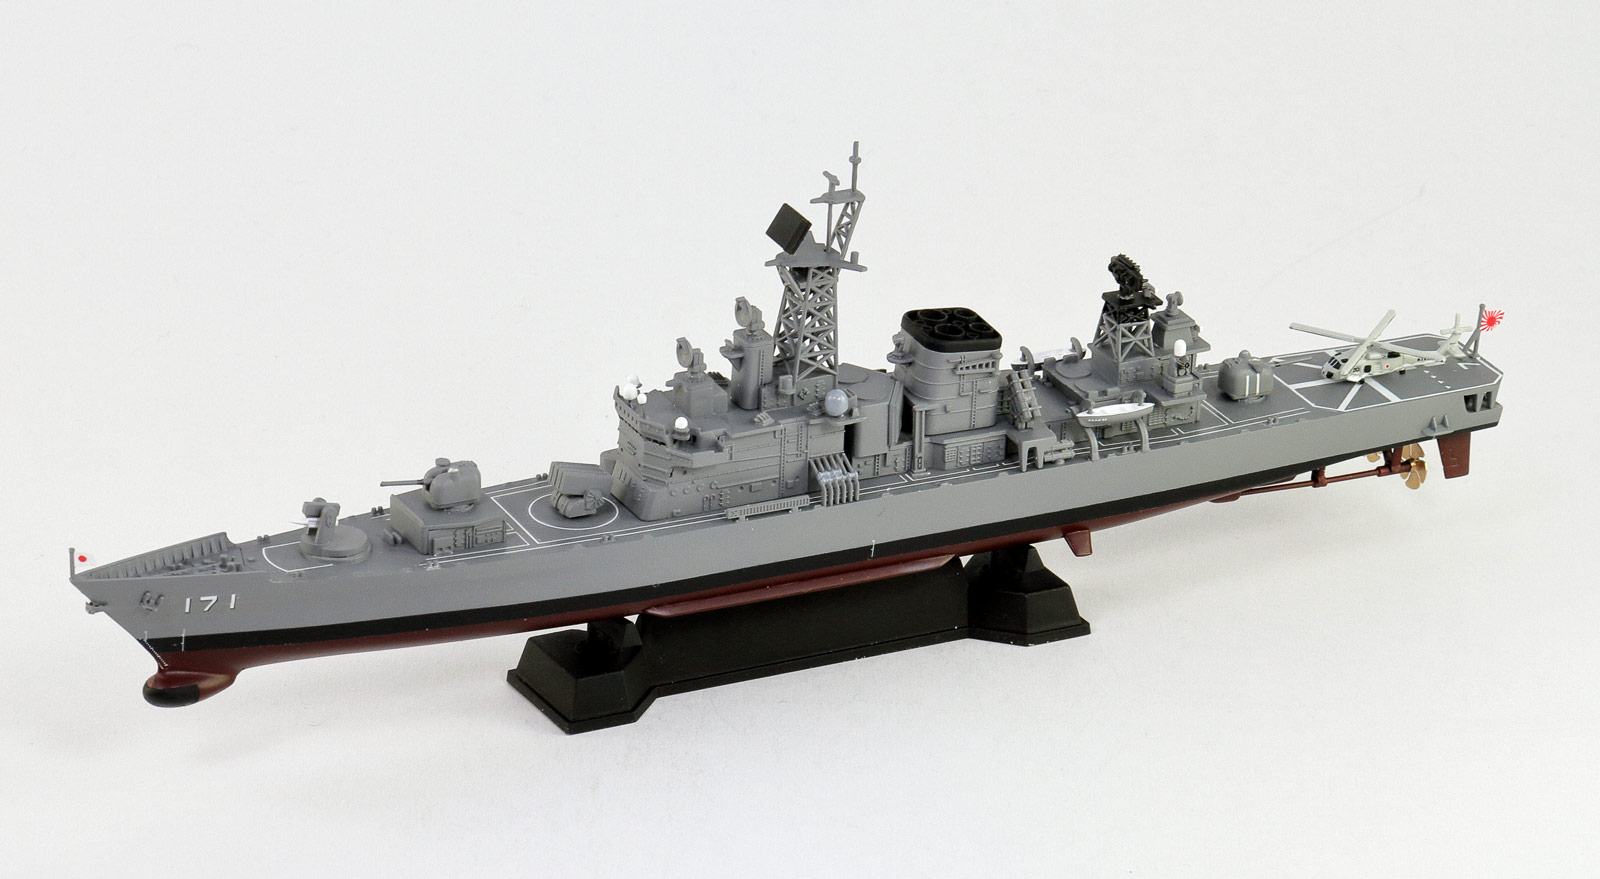 商品コード 海上自衛隊 模型 護衛艦 模型/プラモデル